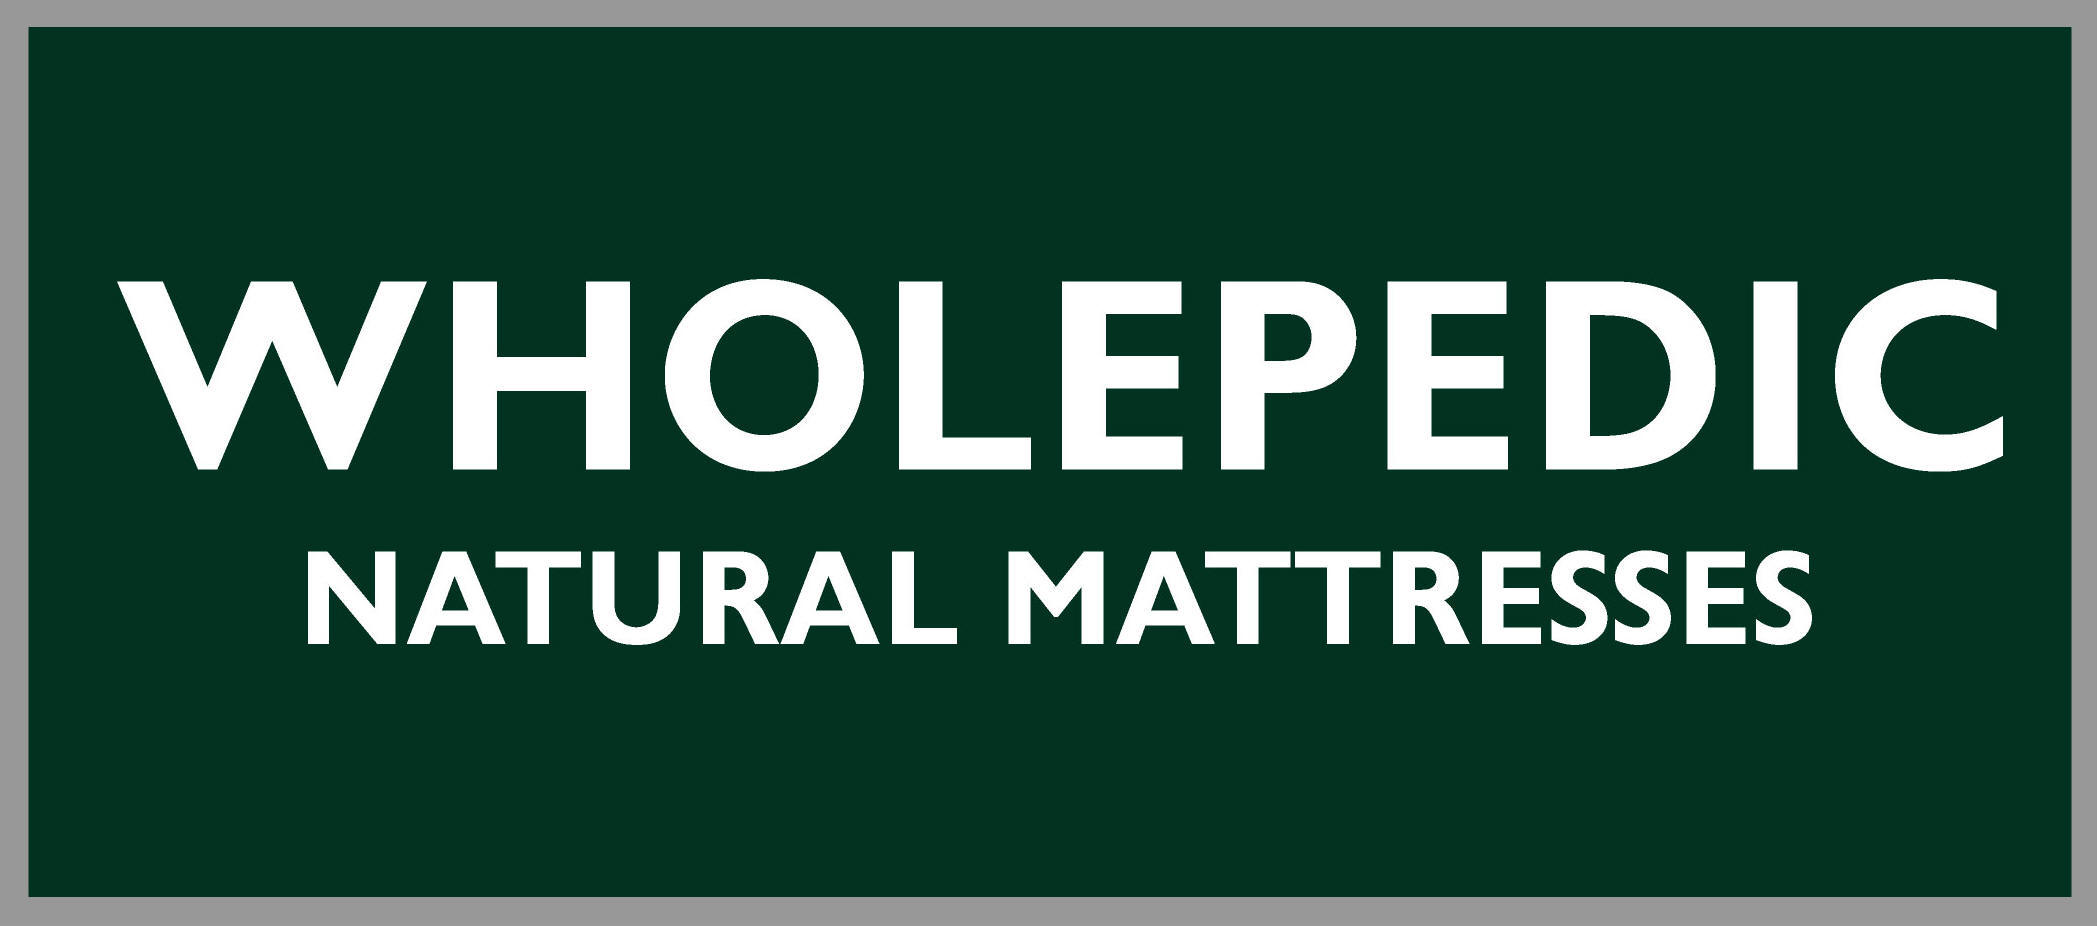 wholepedic natural mattress